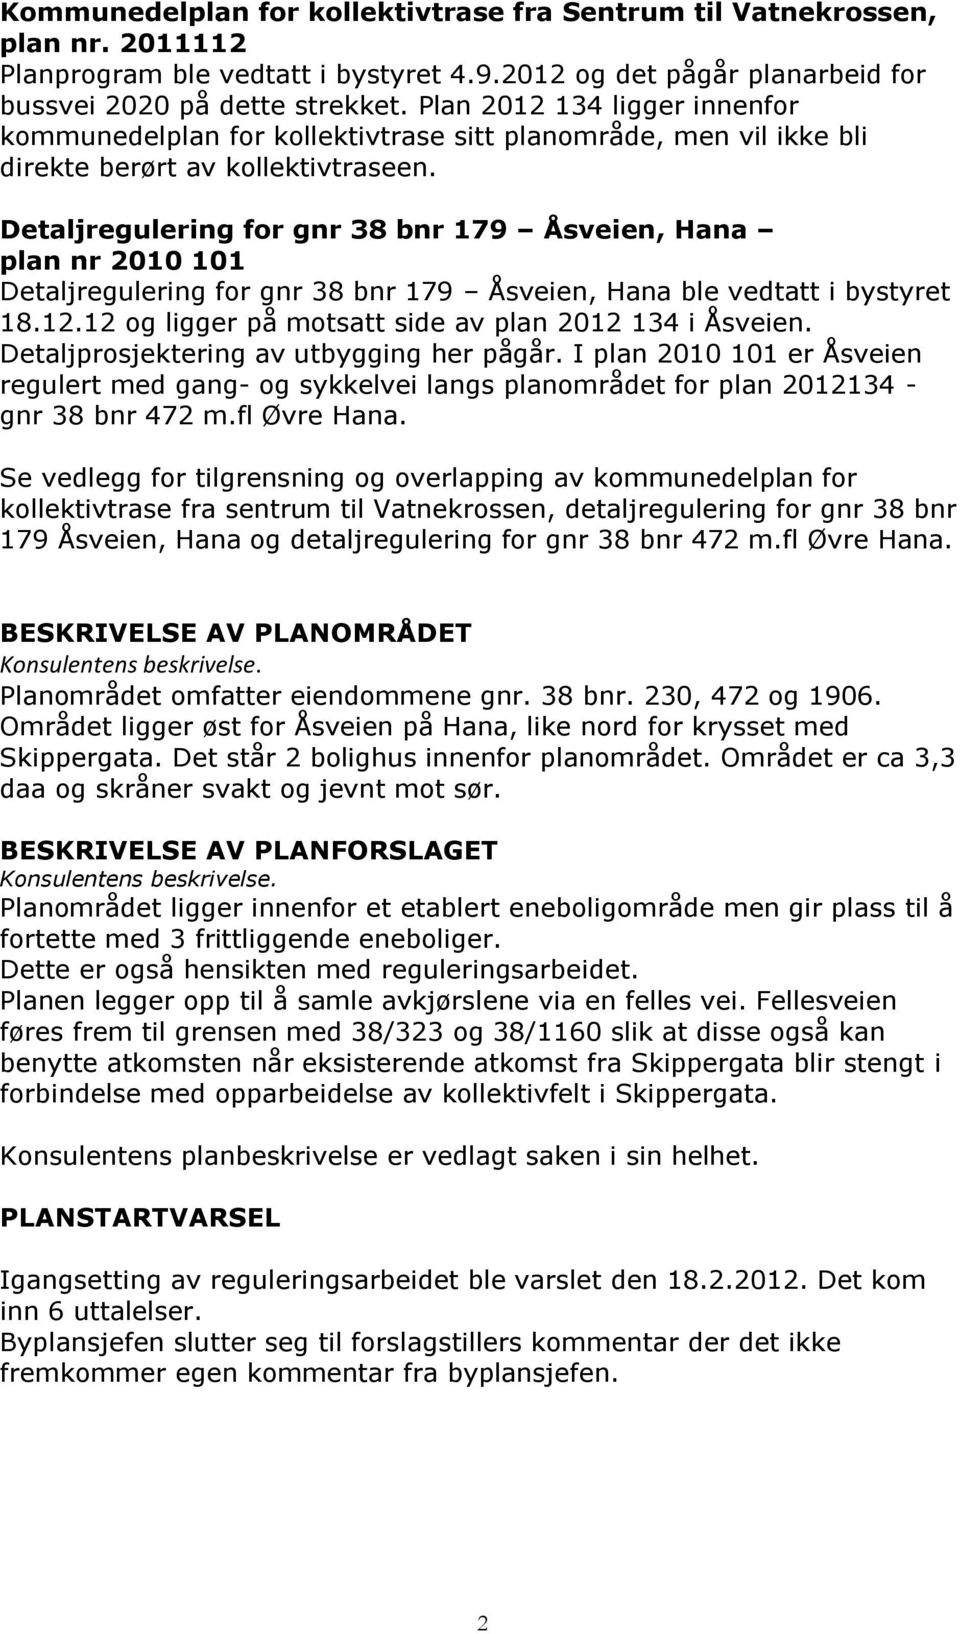 Detaljregulering for gnr 38 bnr 179 Åsveien, Hana plan nr 2010 101 Detaljregulering for gnr 38 bnr 179 Åsveien, Hana ble vedtatt i bystyret 18.12.